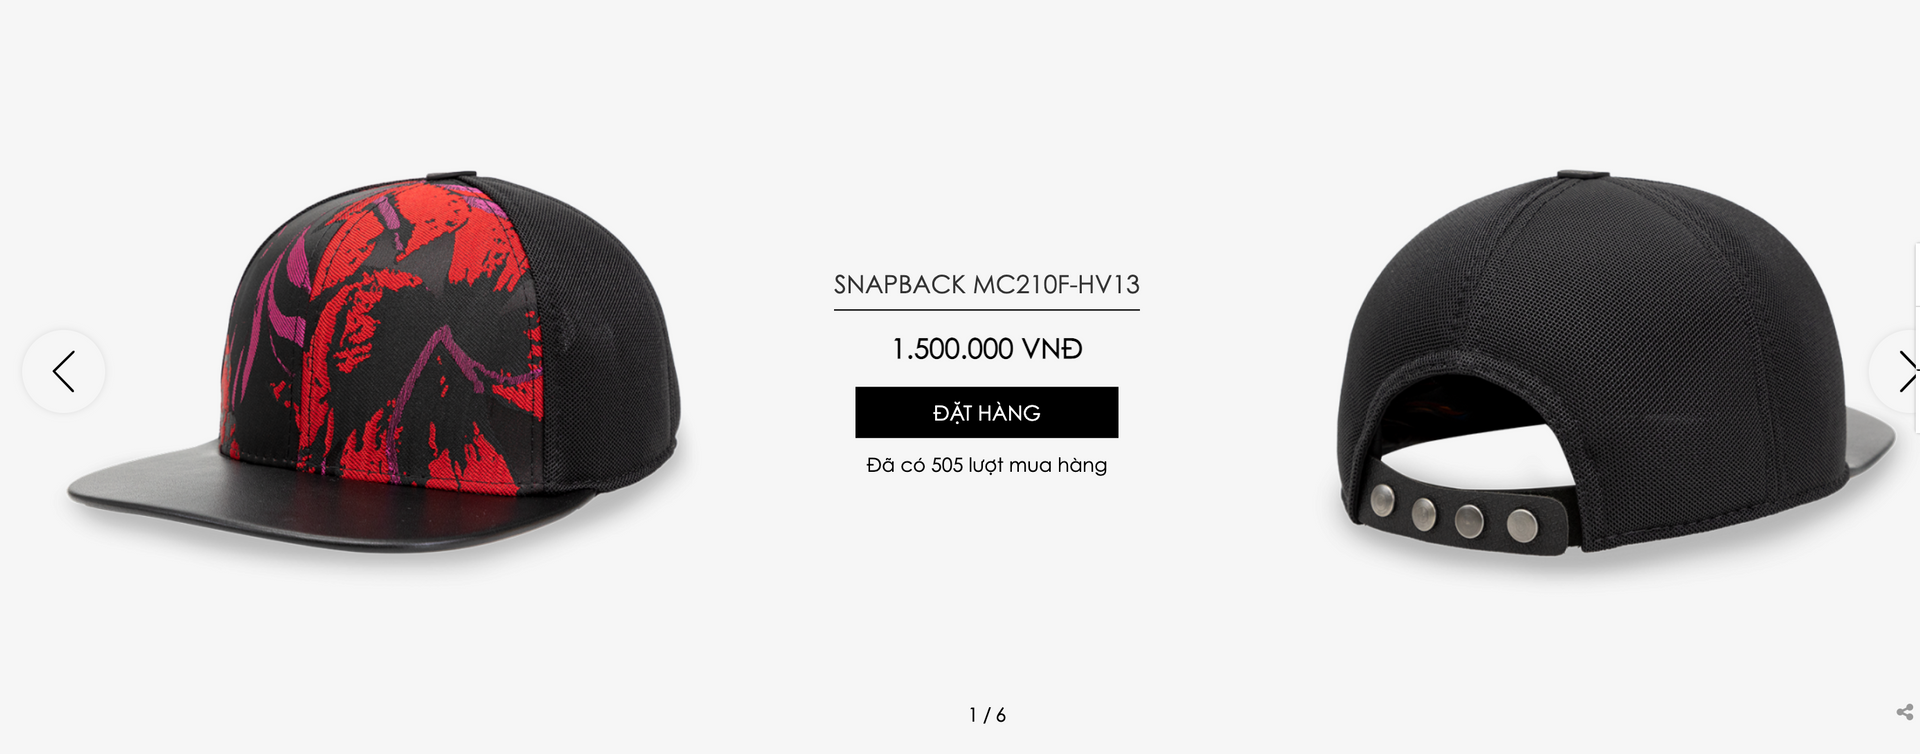 Khi Nón Sơn bán hàng online: Rao từ website đến Shopee và TikTok Shop, mũ đan tay giá lên tới 15 triệu đồng, mang về doanh thu hàng tỷ đồng - Ảnh 4.